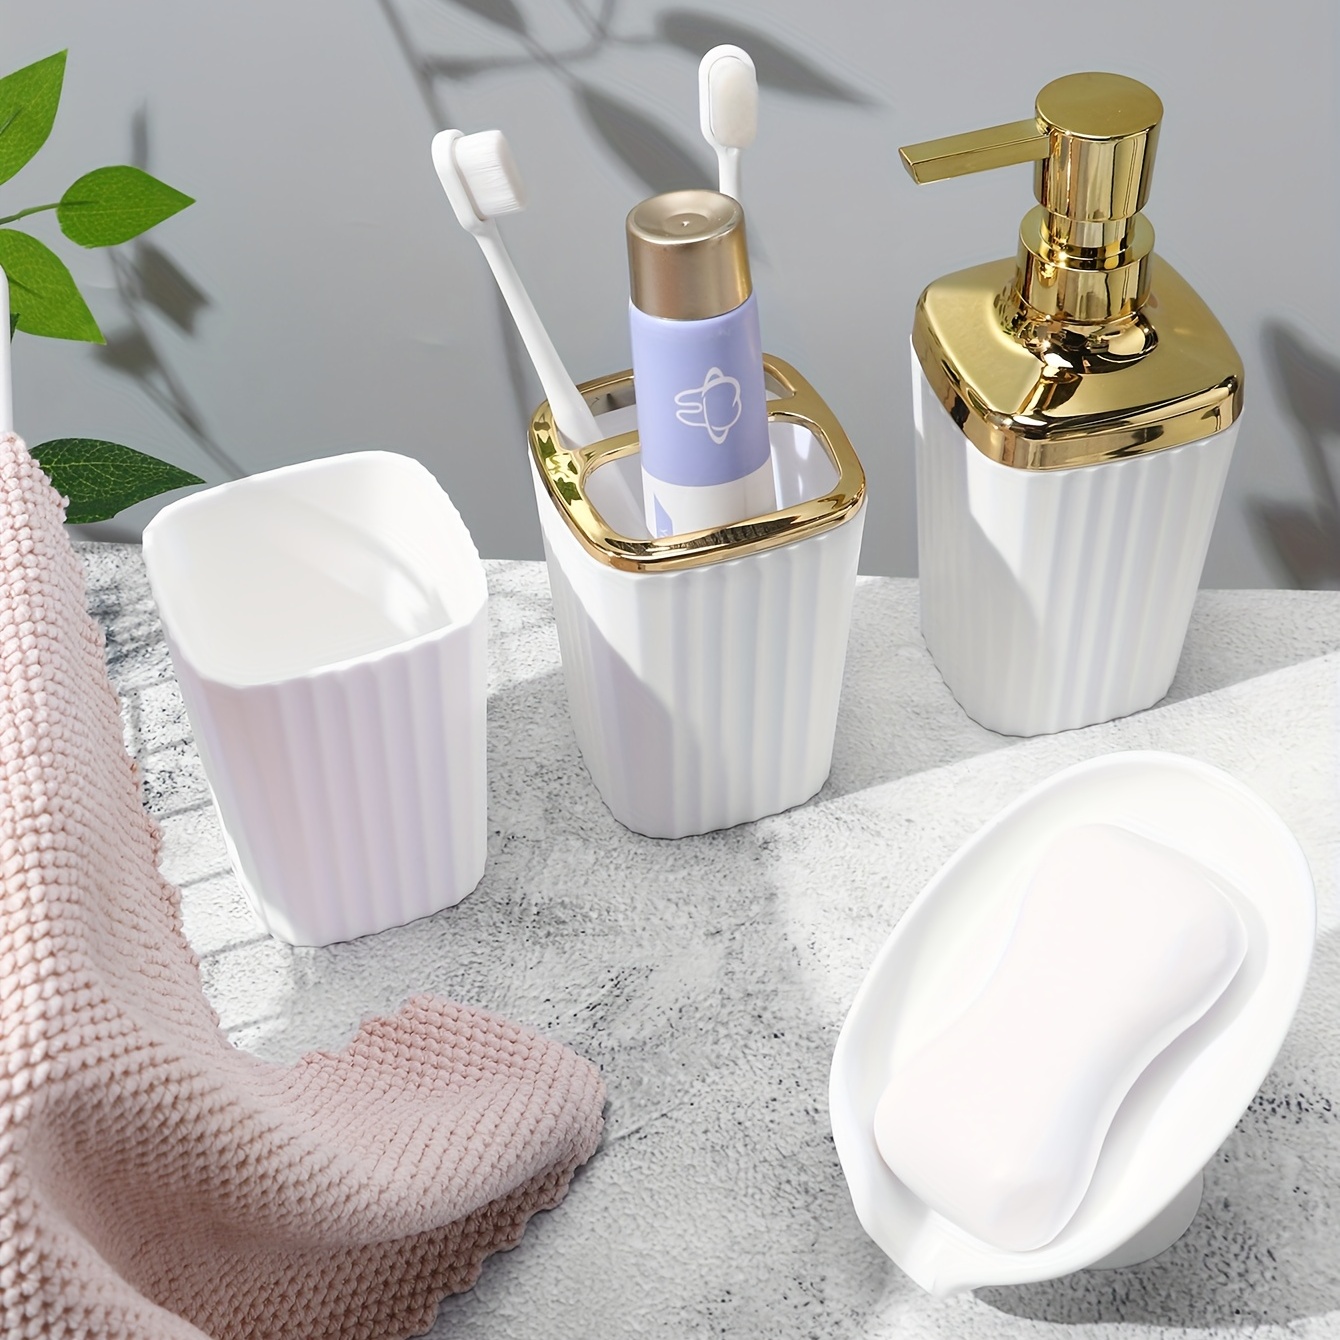 Home Basics Juego de accesorios de baño de 4 piezas, incluye dispensador de  jabón/loción, soporte para cepillo de dientes y pasta de dientes, jabonera